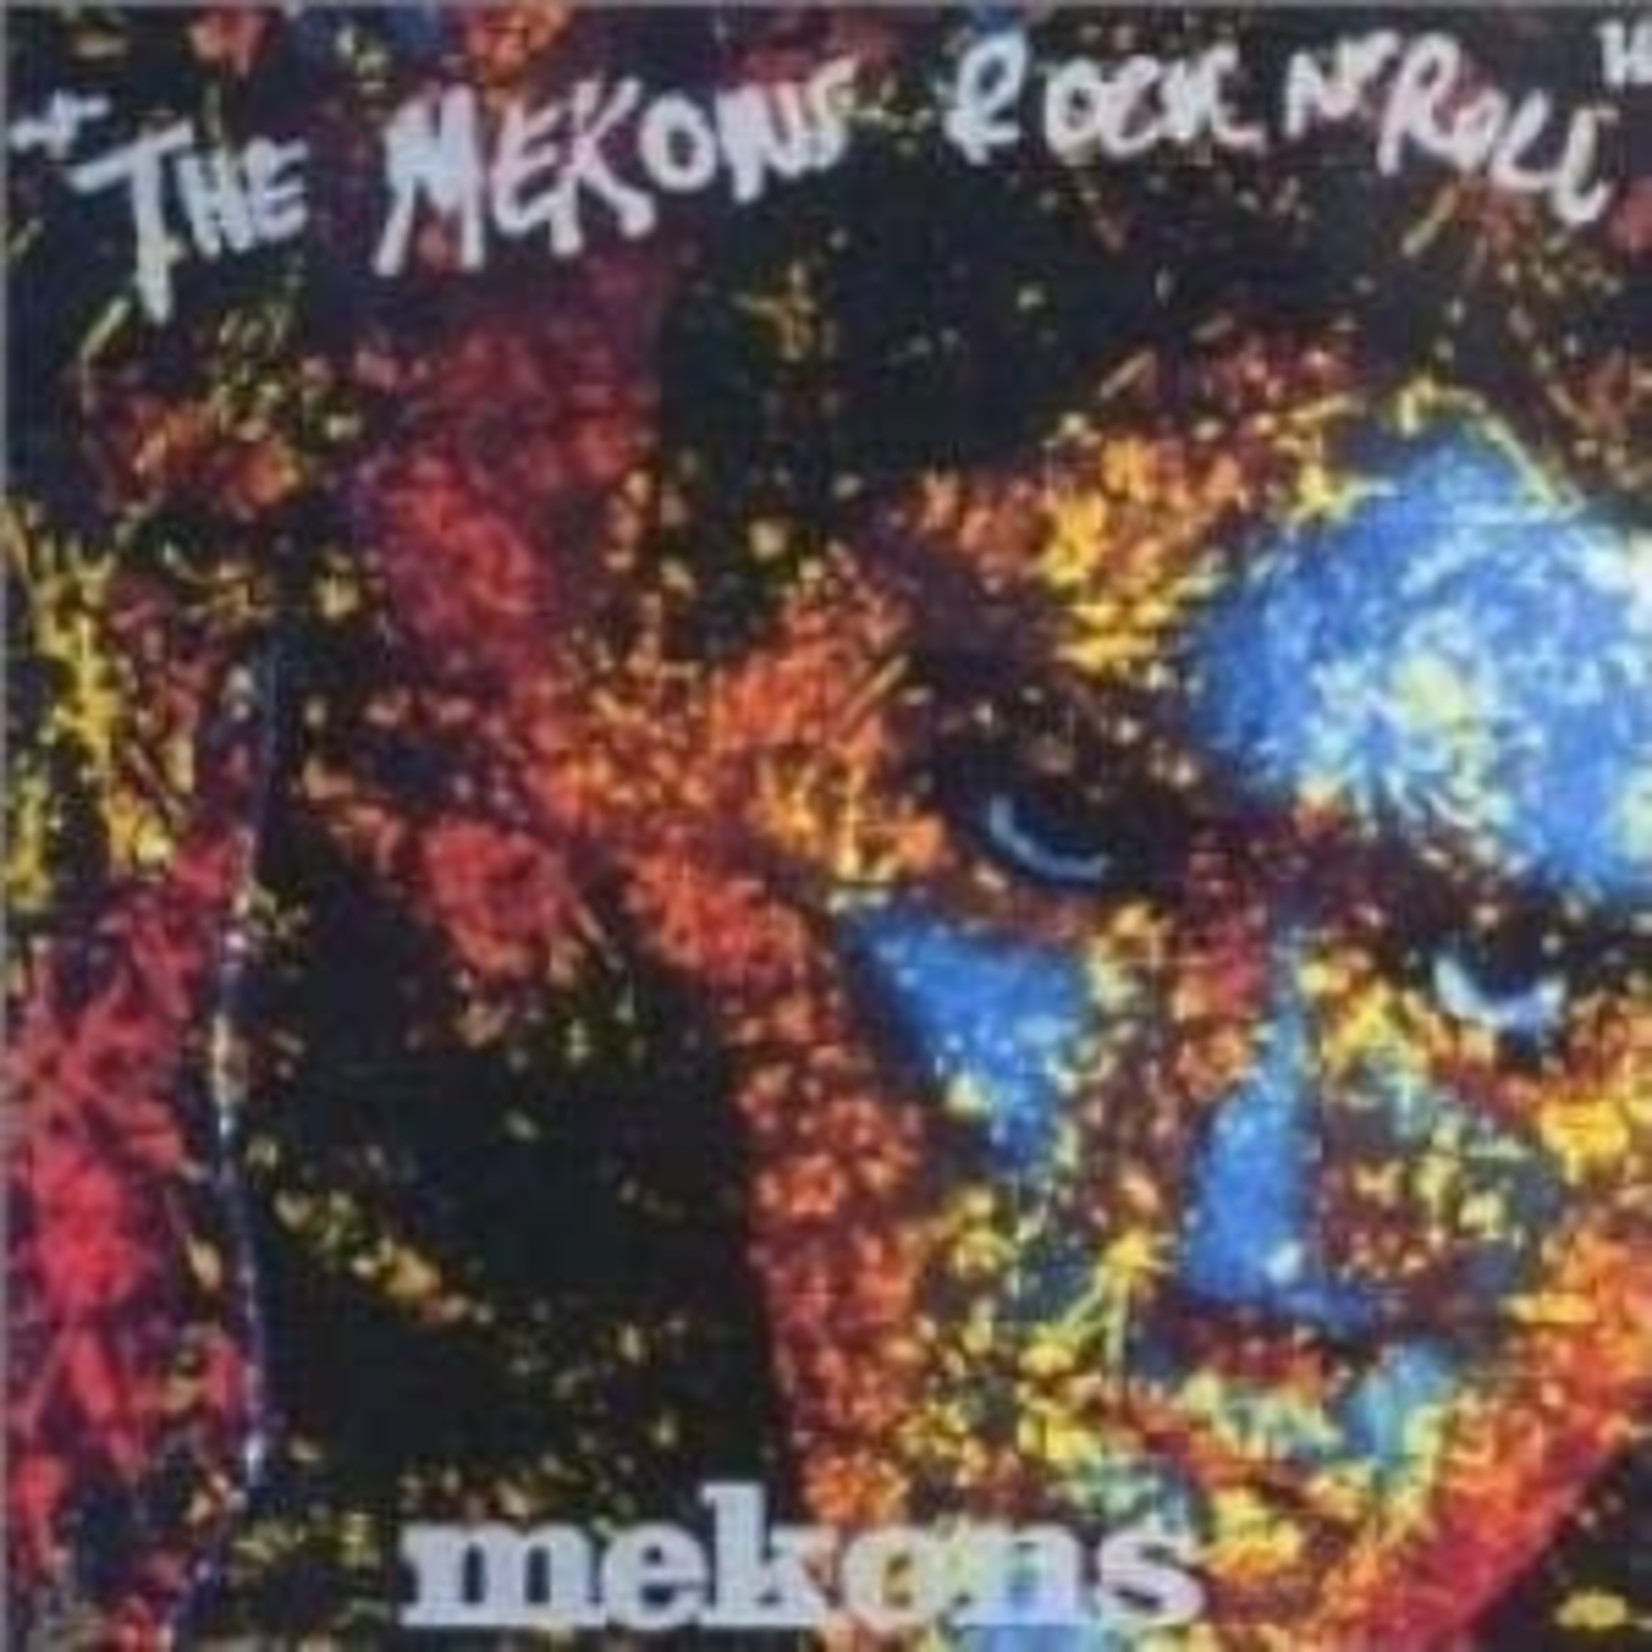 THE MEKONS – THE MEKONS ROCK N’ ROLL - LP